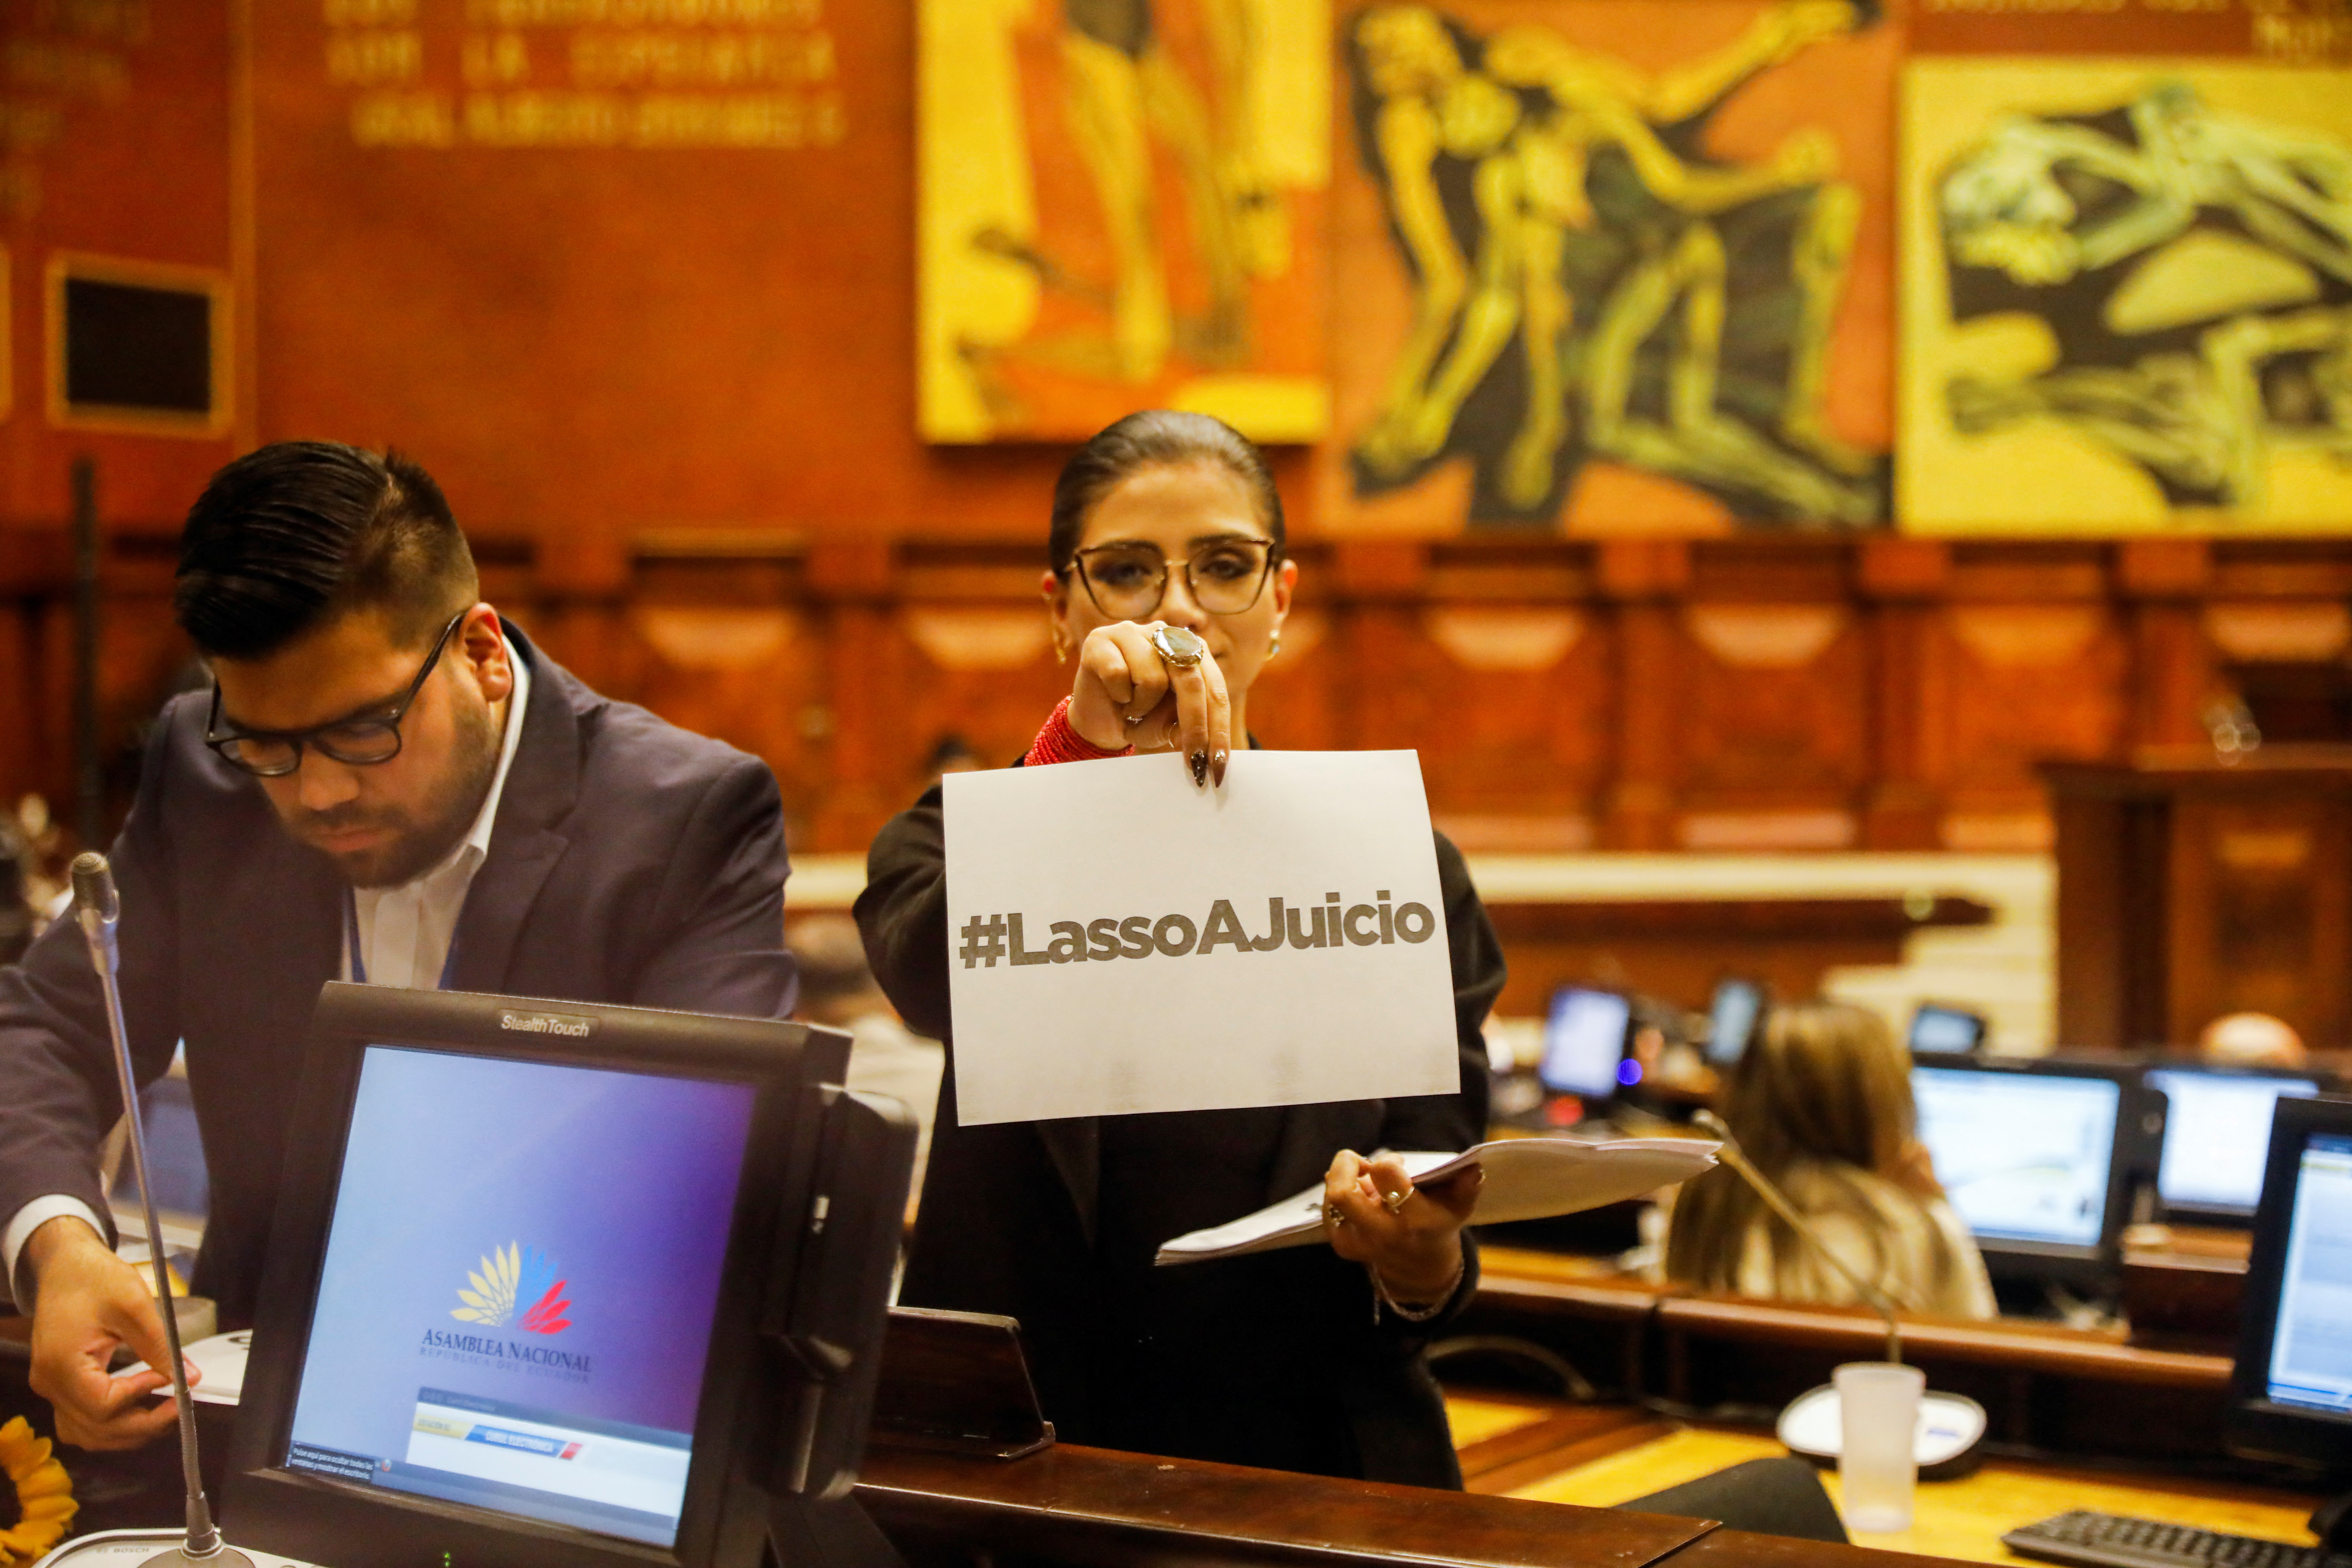 La oposición de Guillermo Lasso busca concretar un juicio político en su contra. (REUTERS/Karen Toro)
